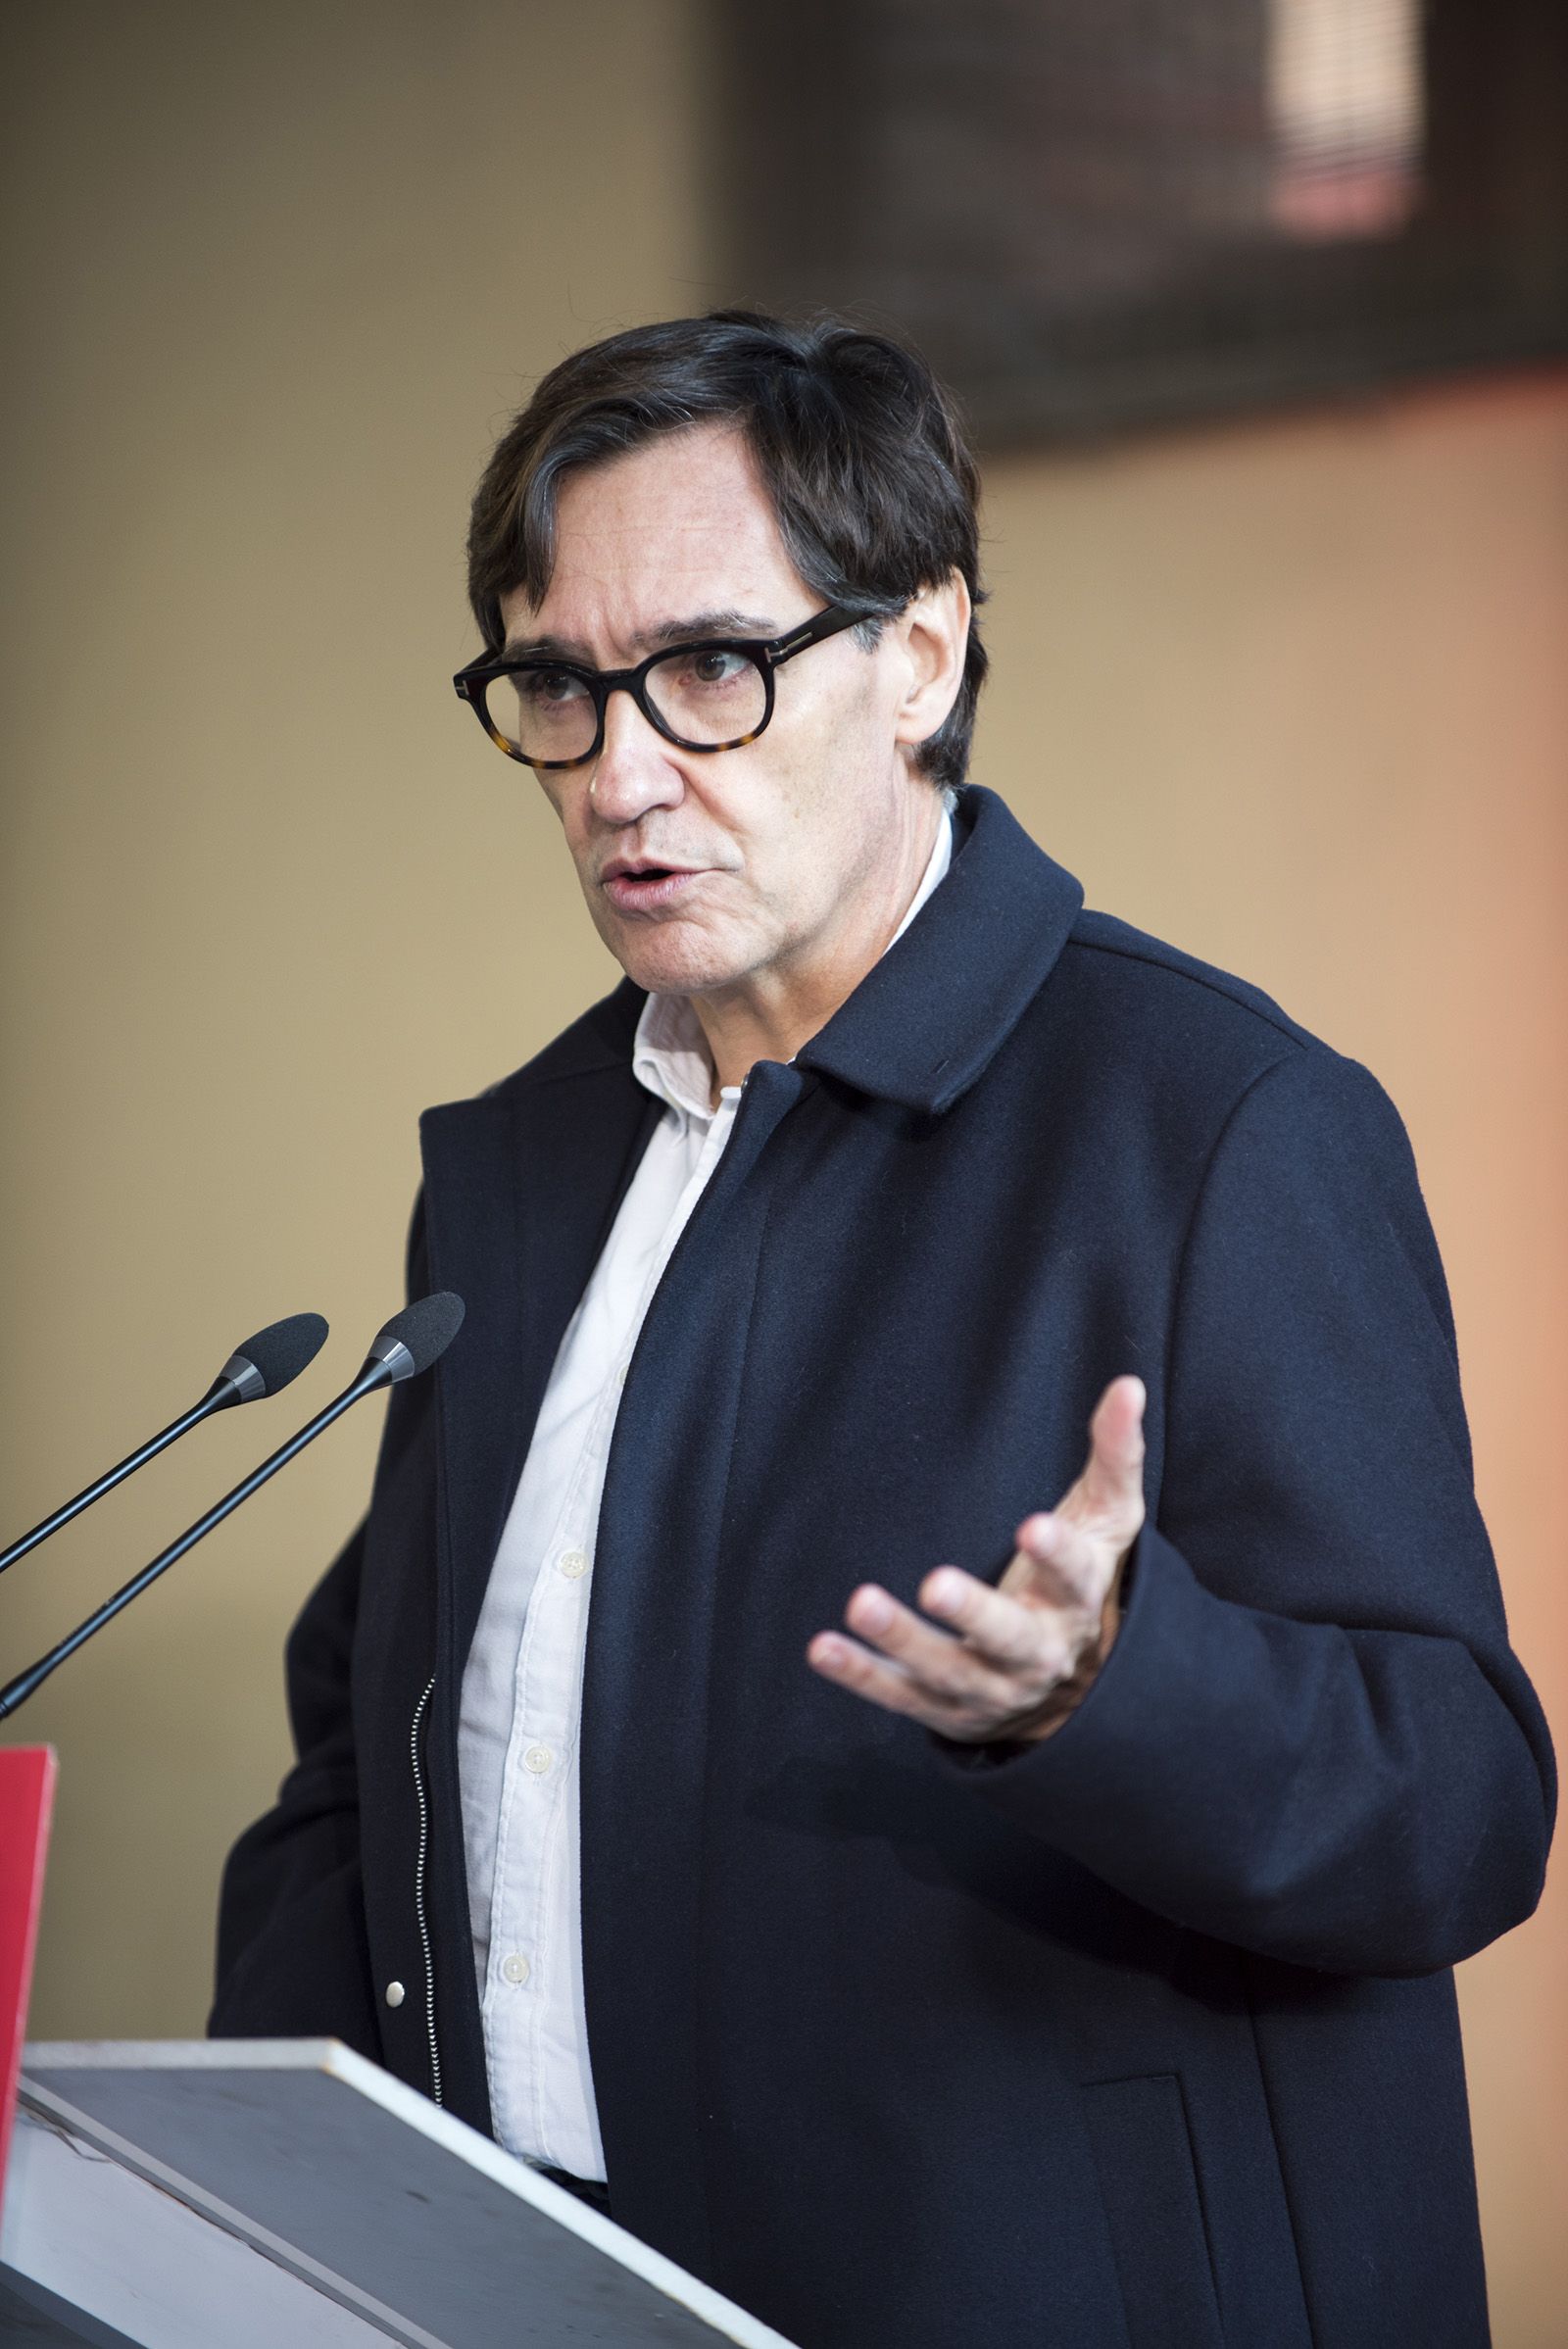 Presentació de Pere Soler com a candidat del PSC a l'alcaldia de Sant Cugat. FOTO: Bernat Millet.